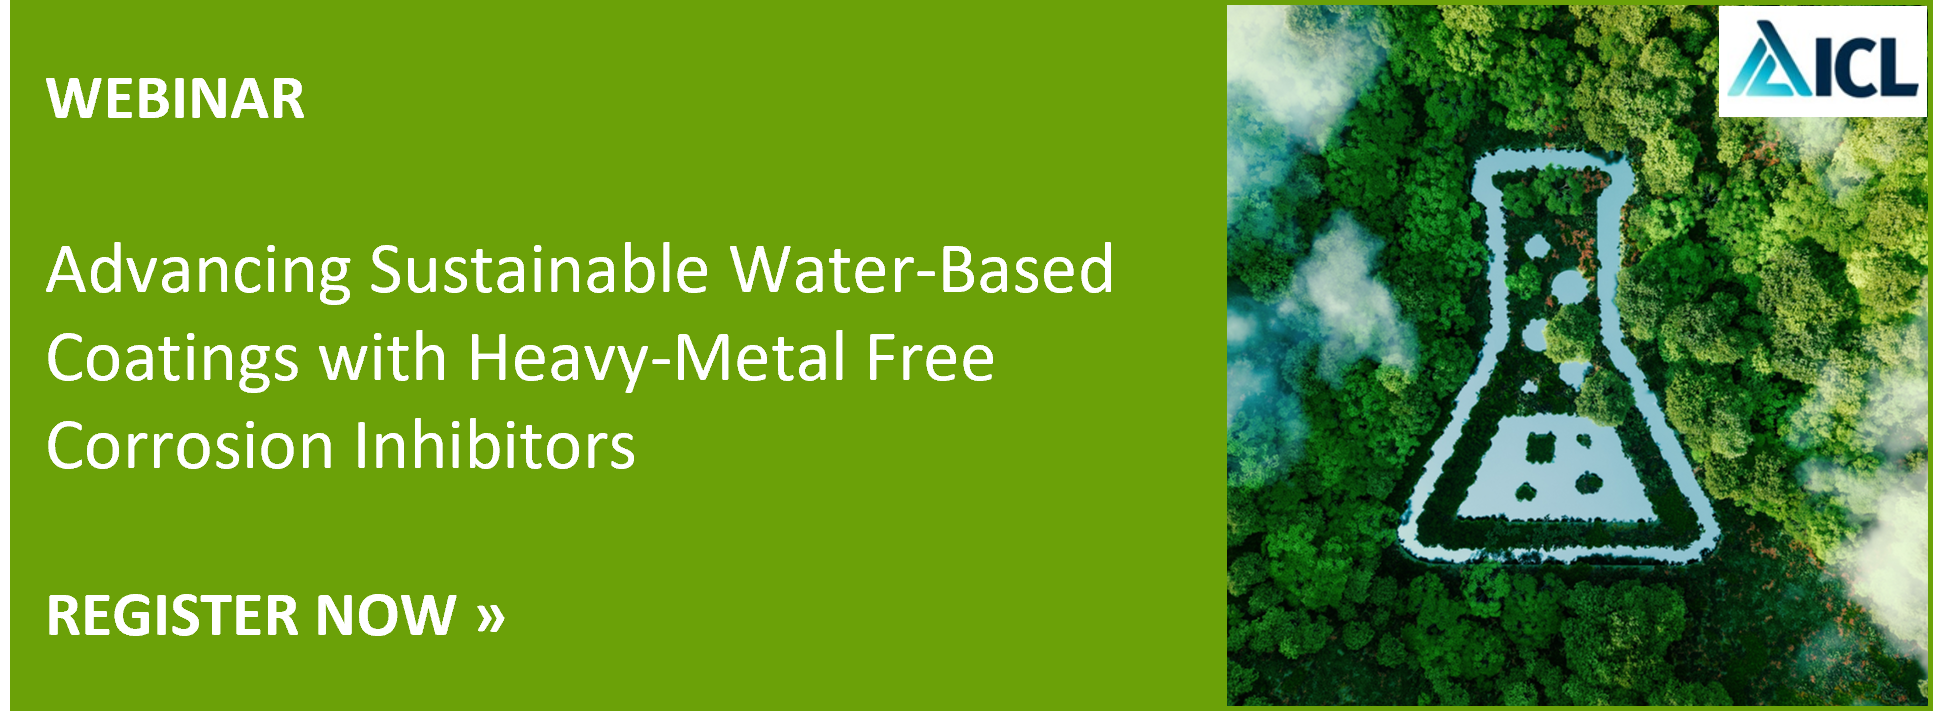 推进可持续发展水性涂料与重金属自由腐蚀抑制剂